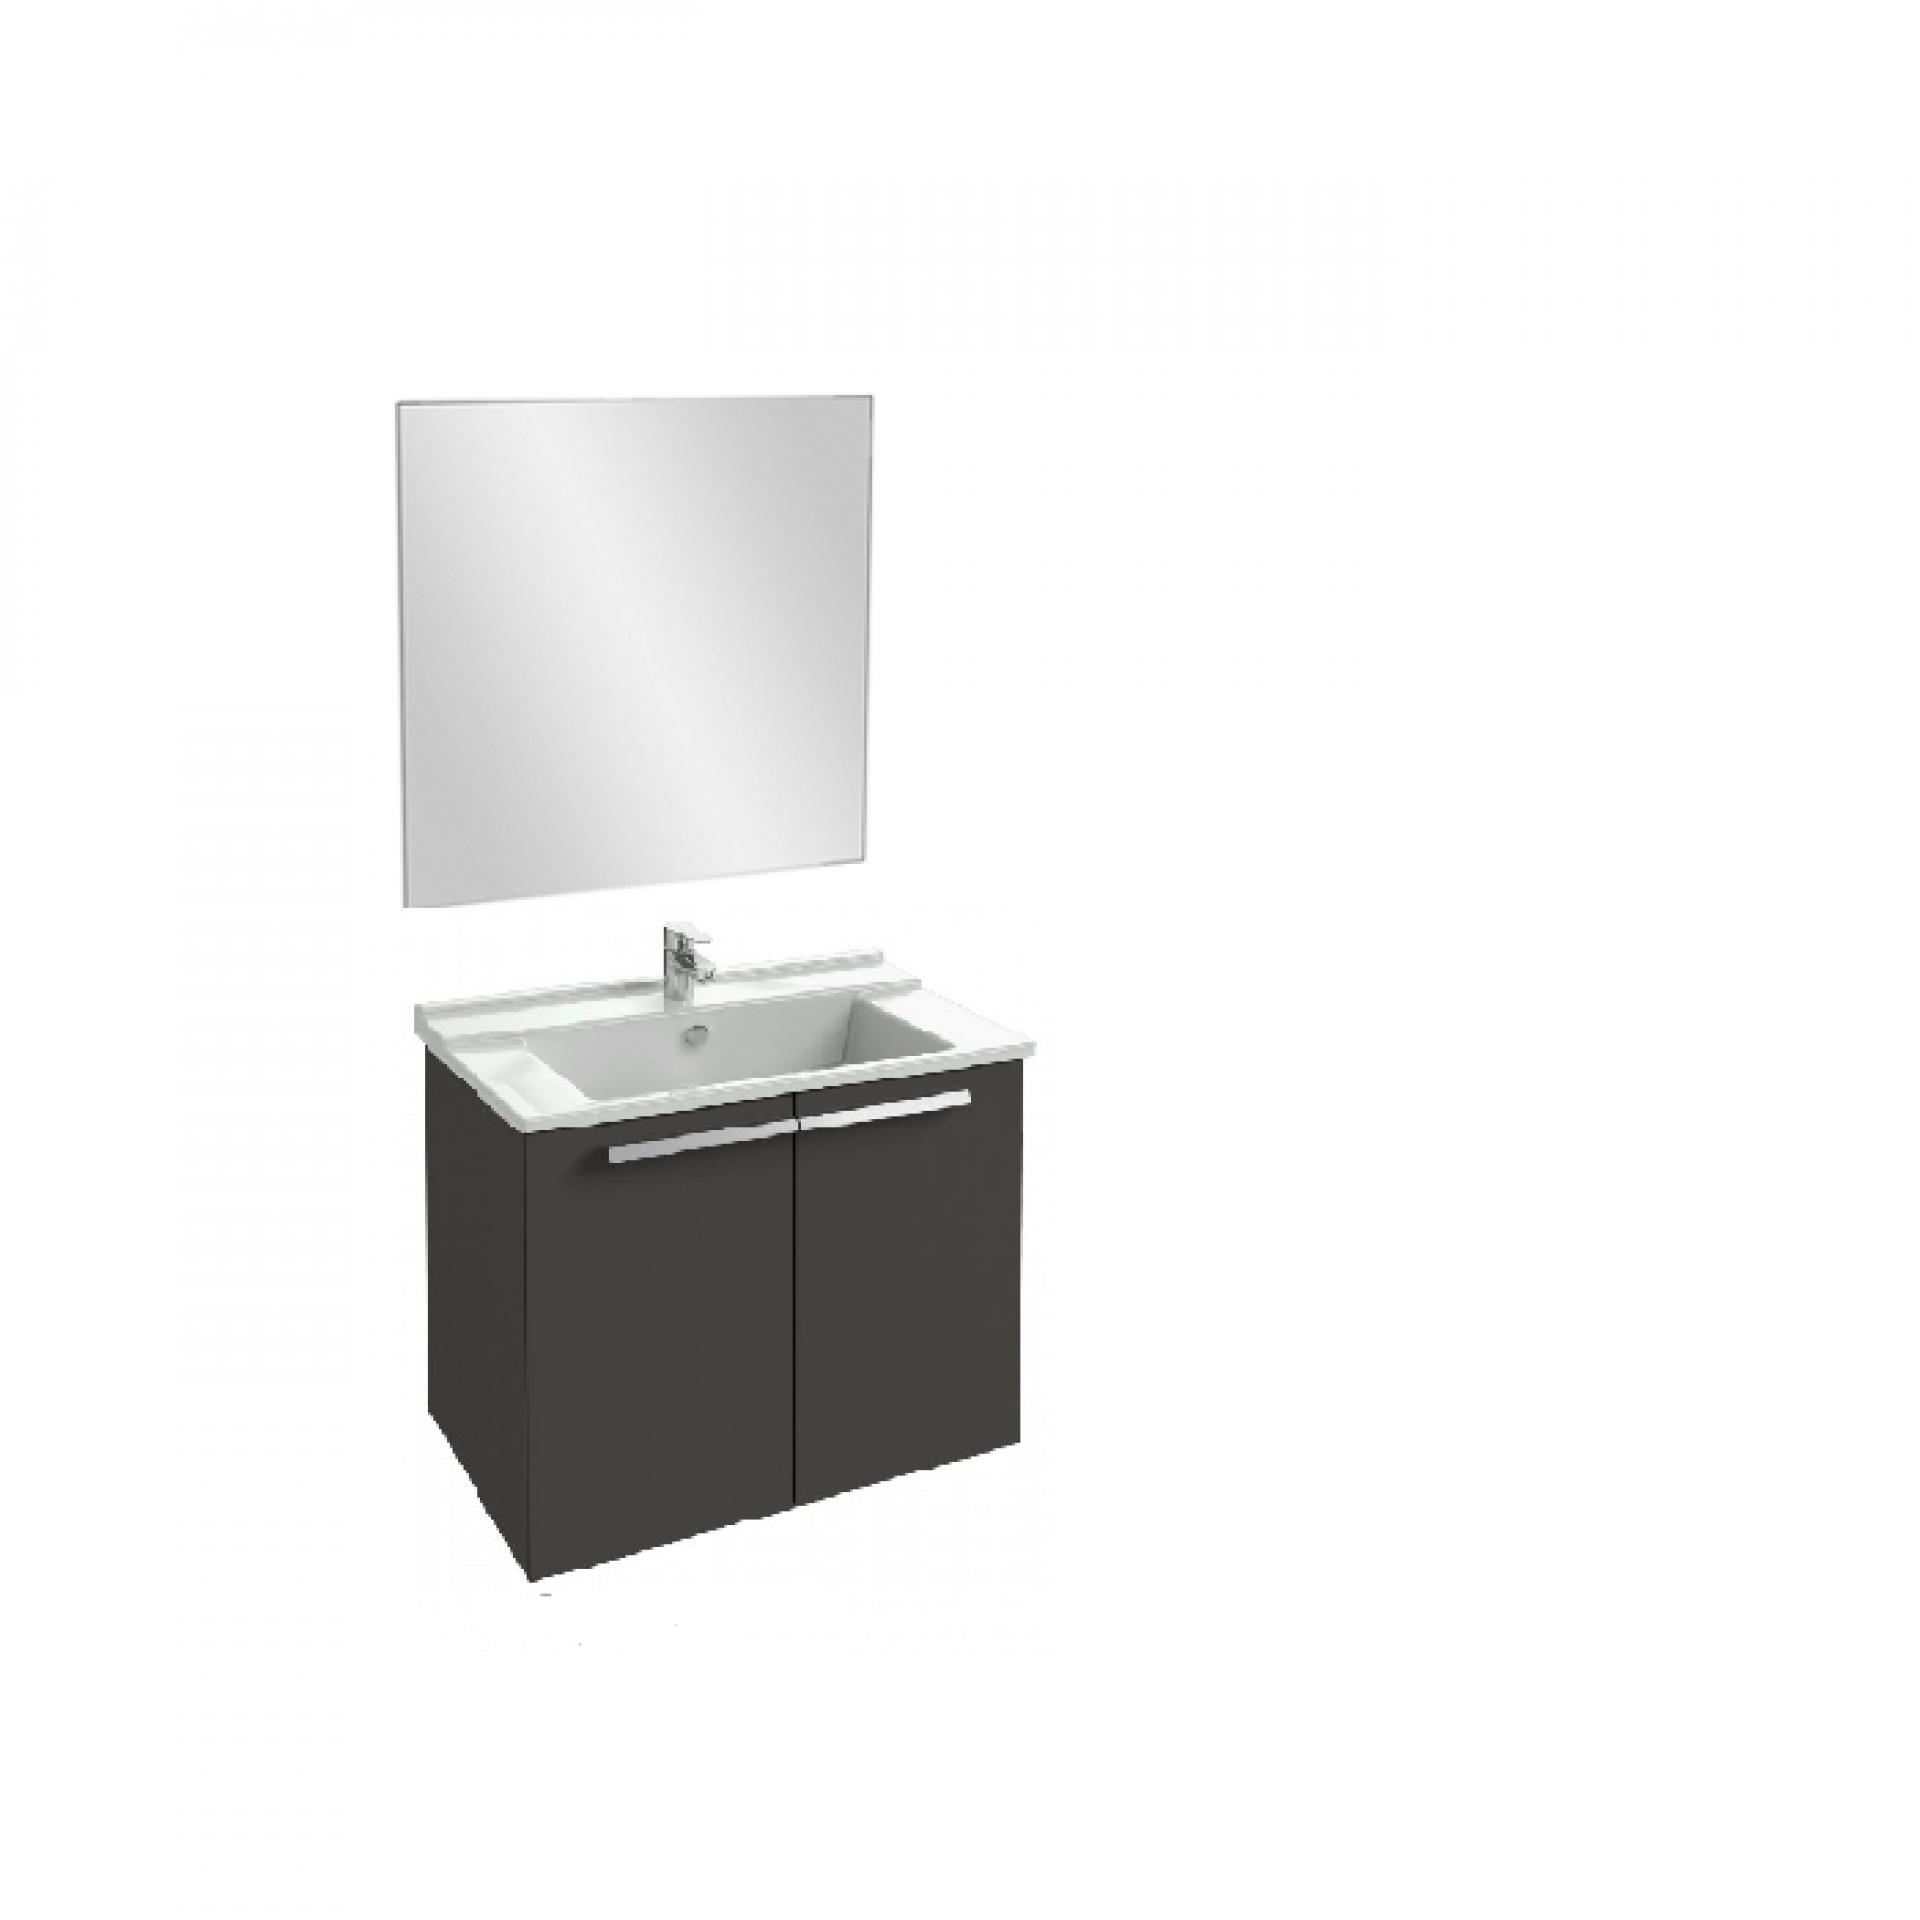 Комплект мебели 60 см Jacob Delafon Struktura с раковиной EXI112-00, тумбой EB1280-N14, зеркалом EB1080-NF, серый антрацит